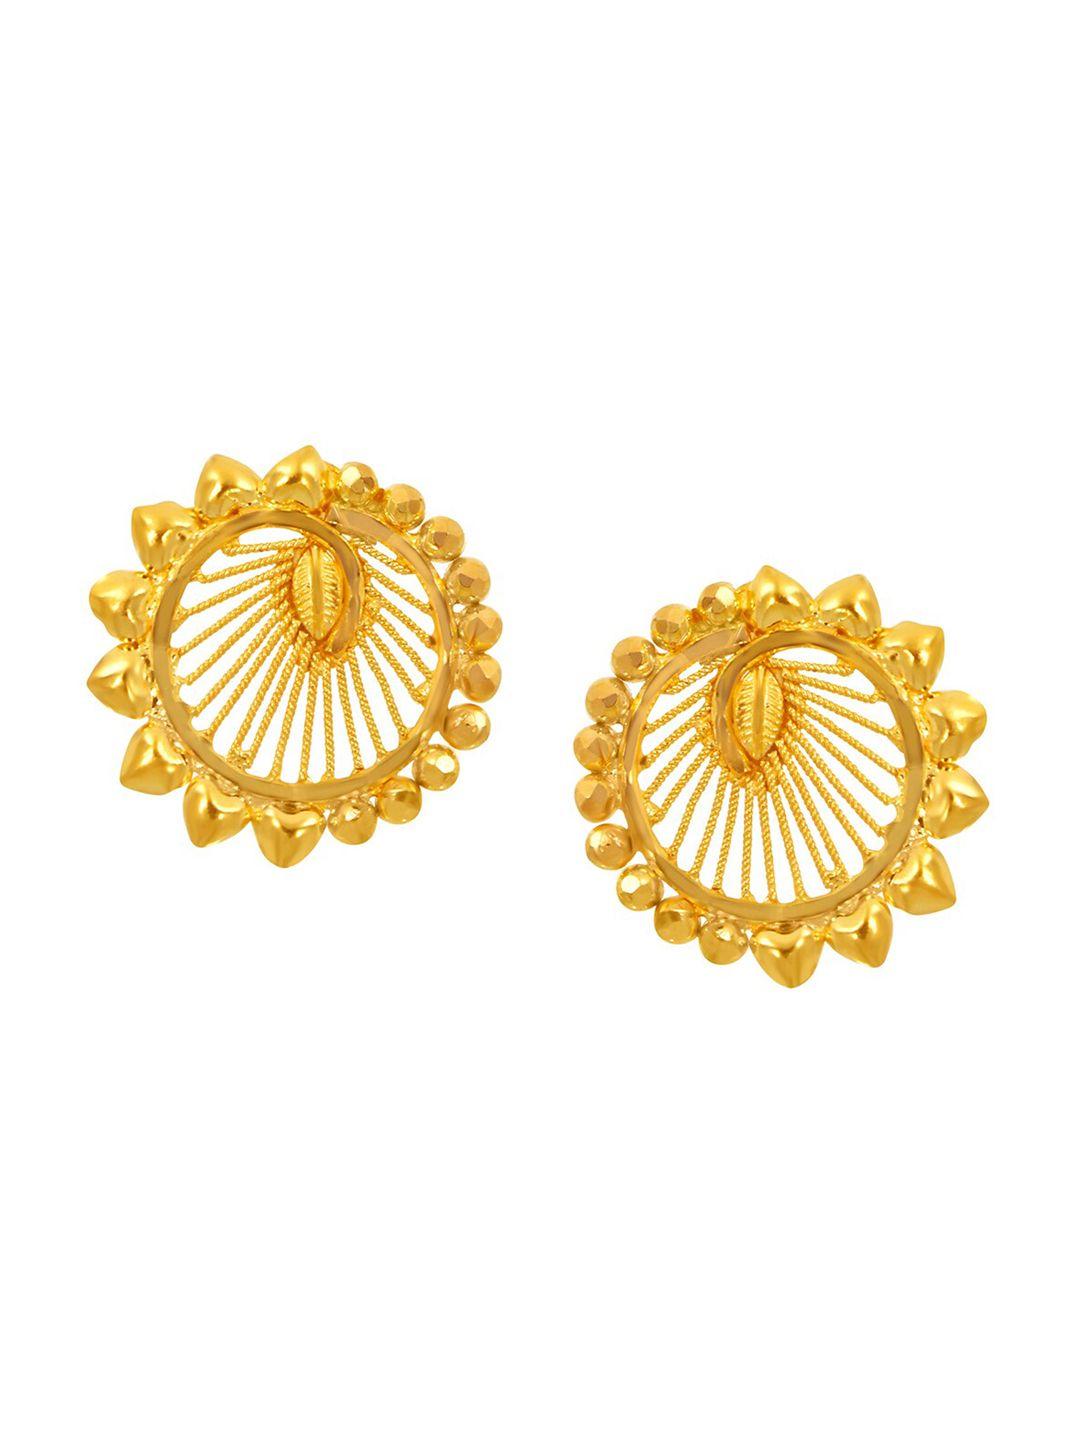 senco-captivating-22kt-gold-stud-earrings-2.0gm